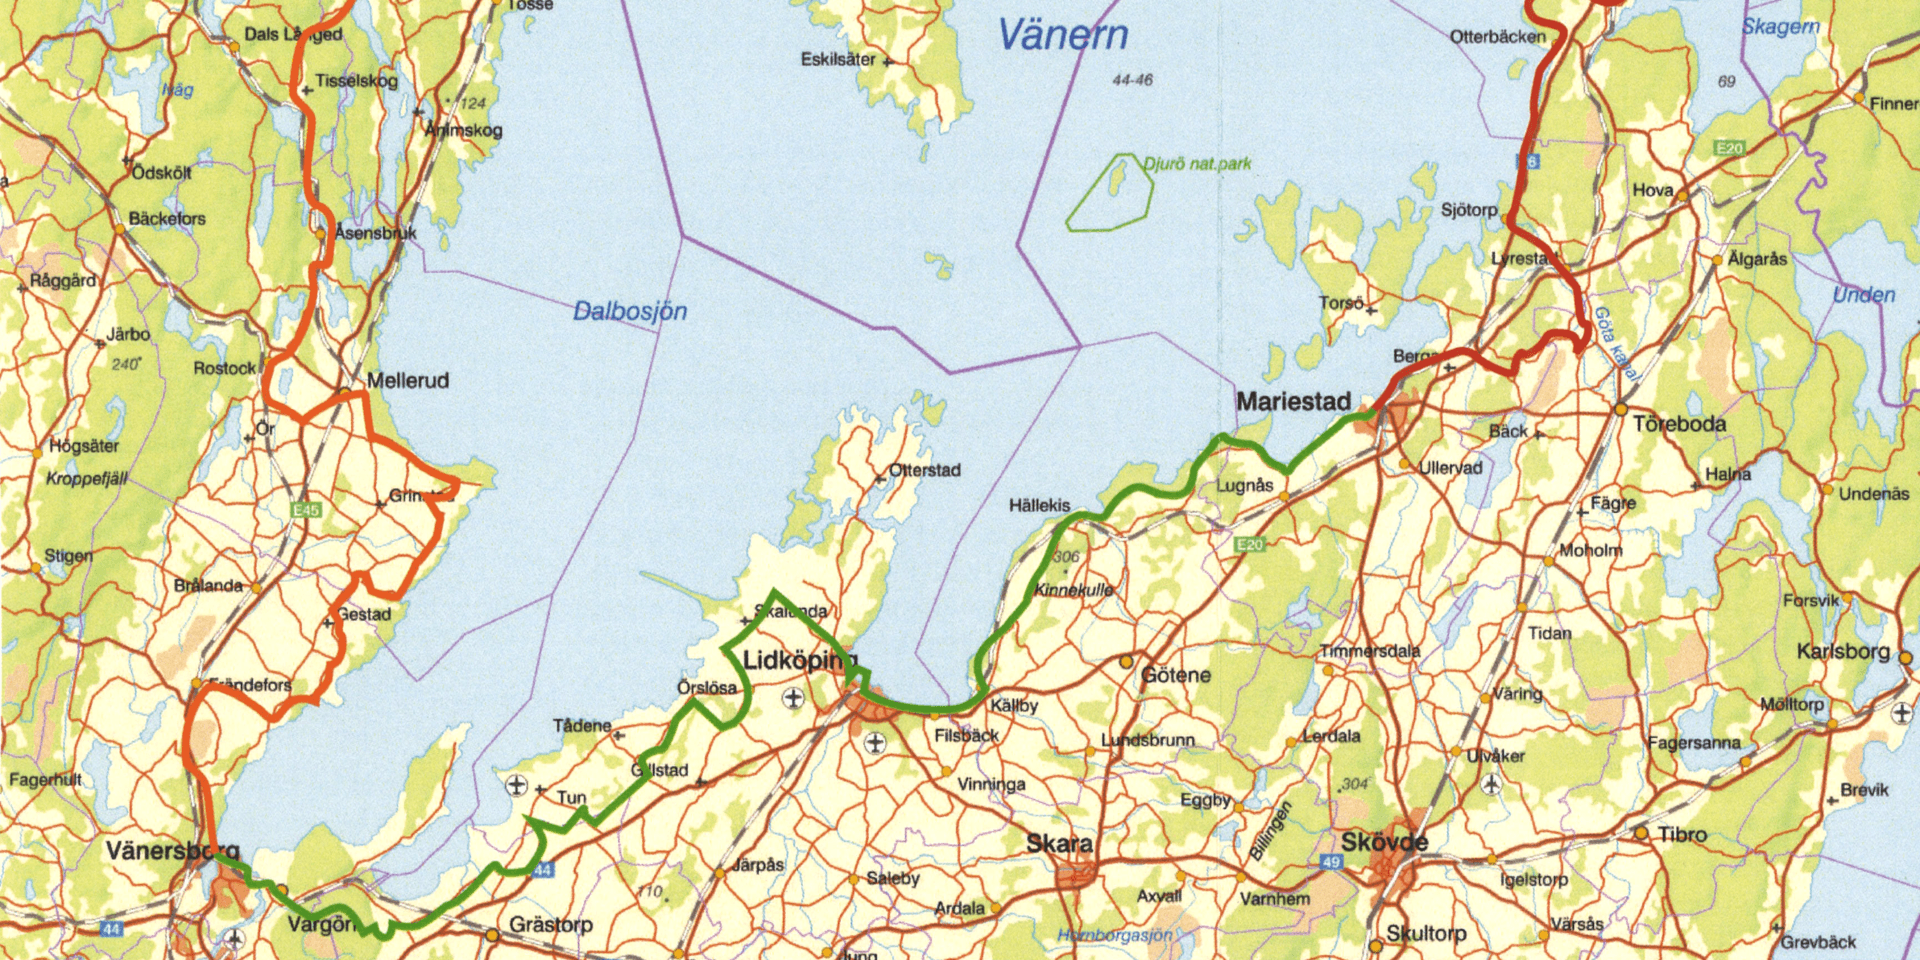 Sträckan runt Vänern är indelad i fyra etapper. Två av dem möts i Vänersborg.